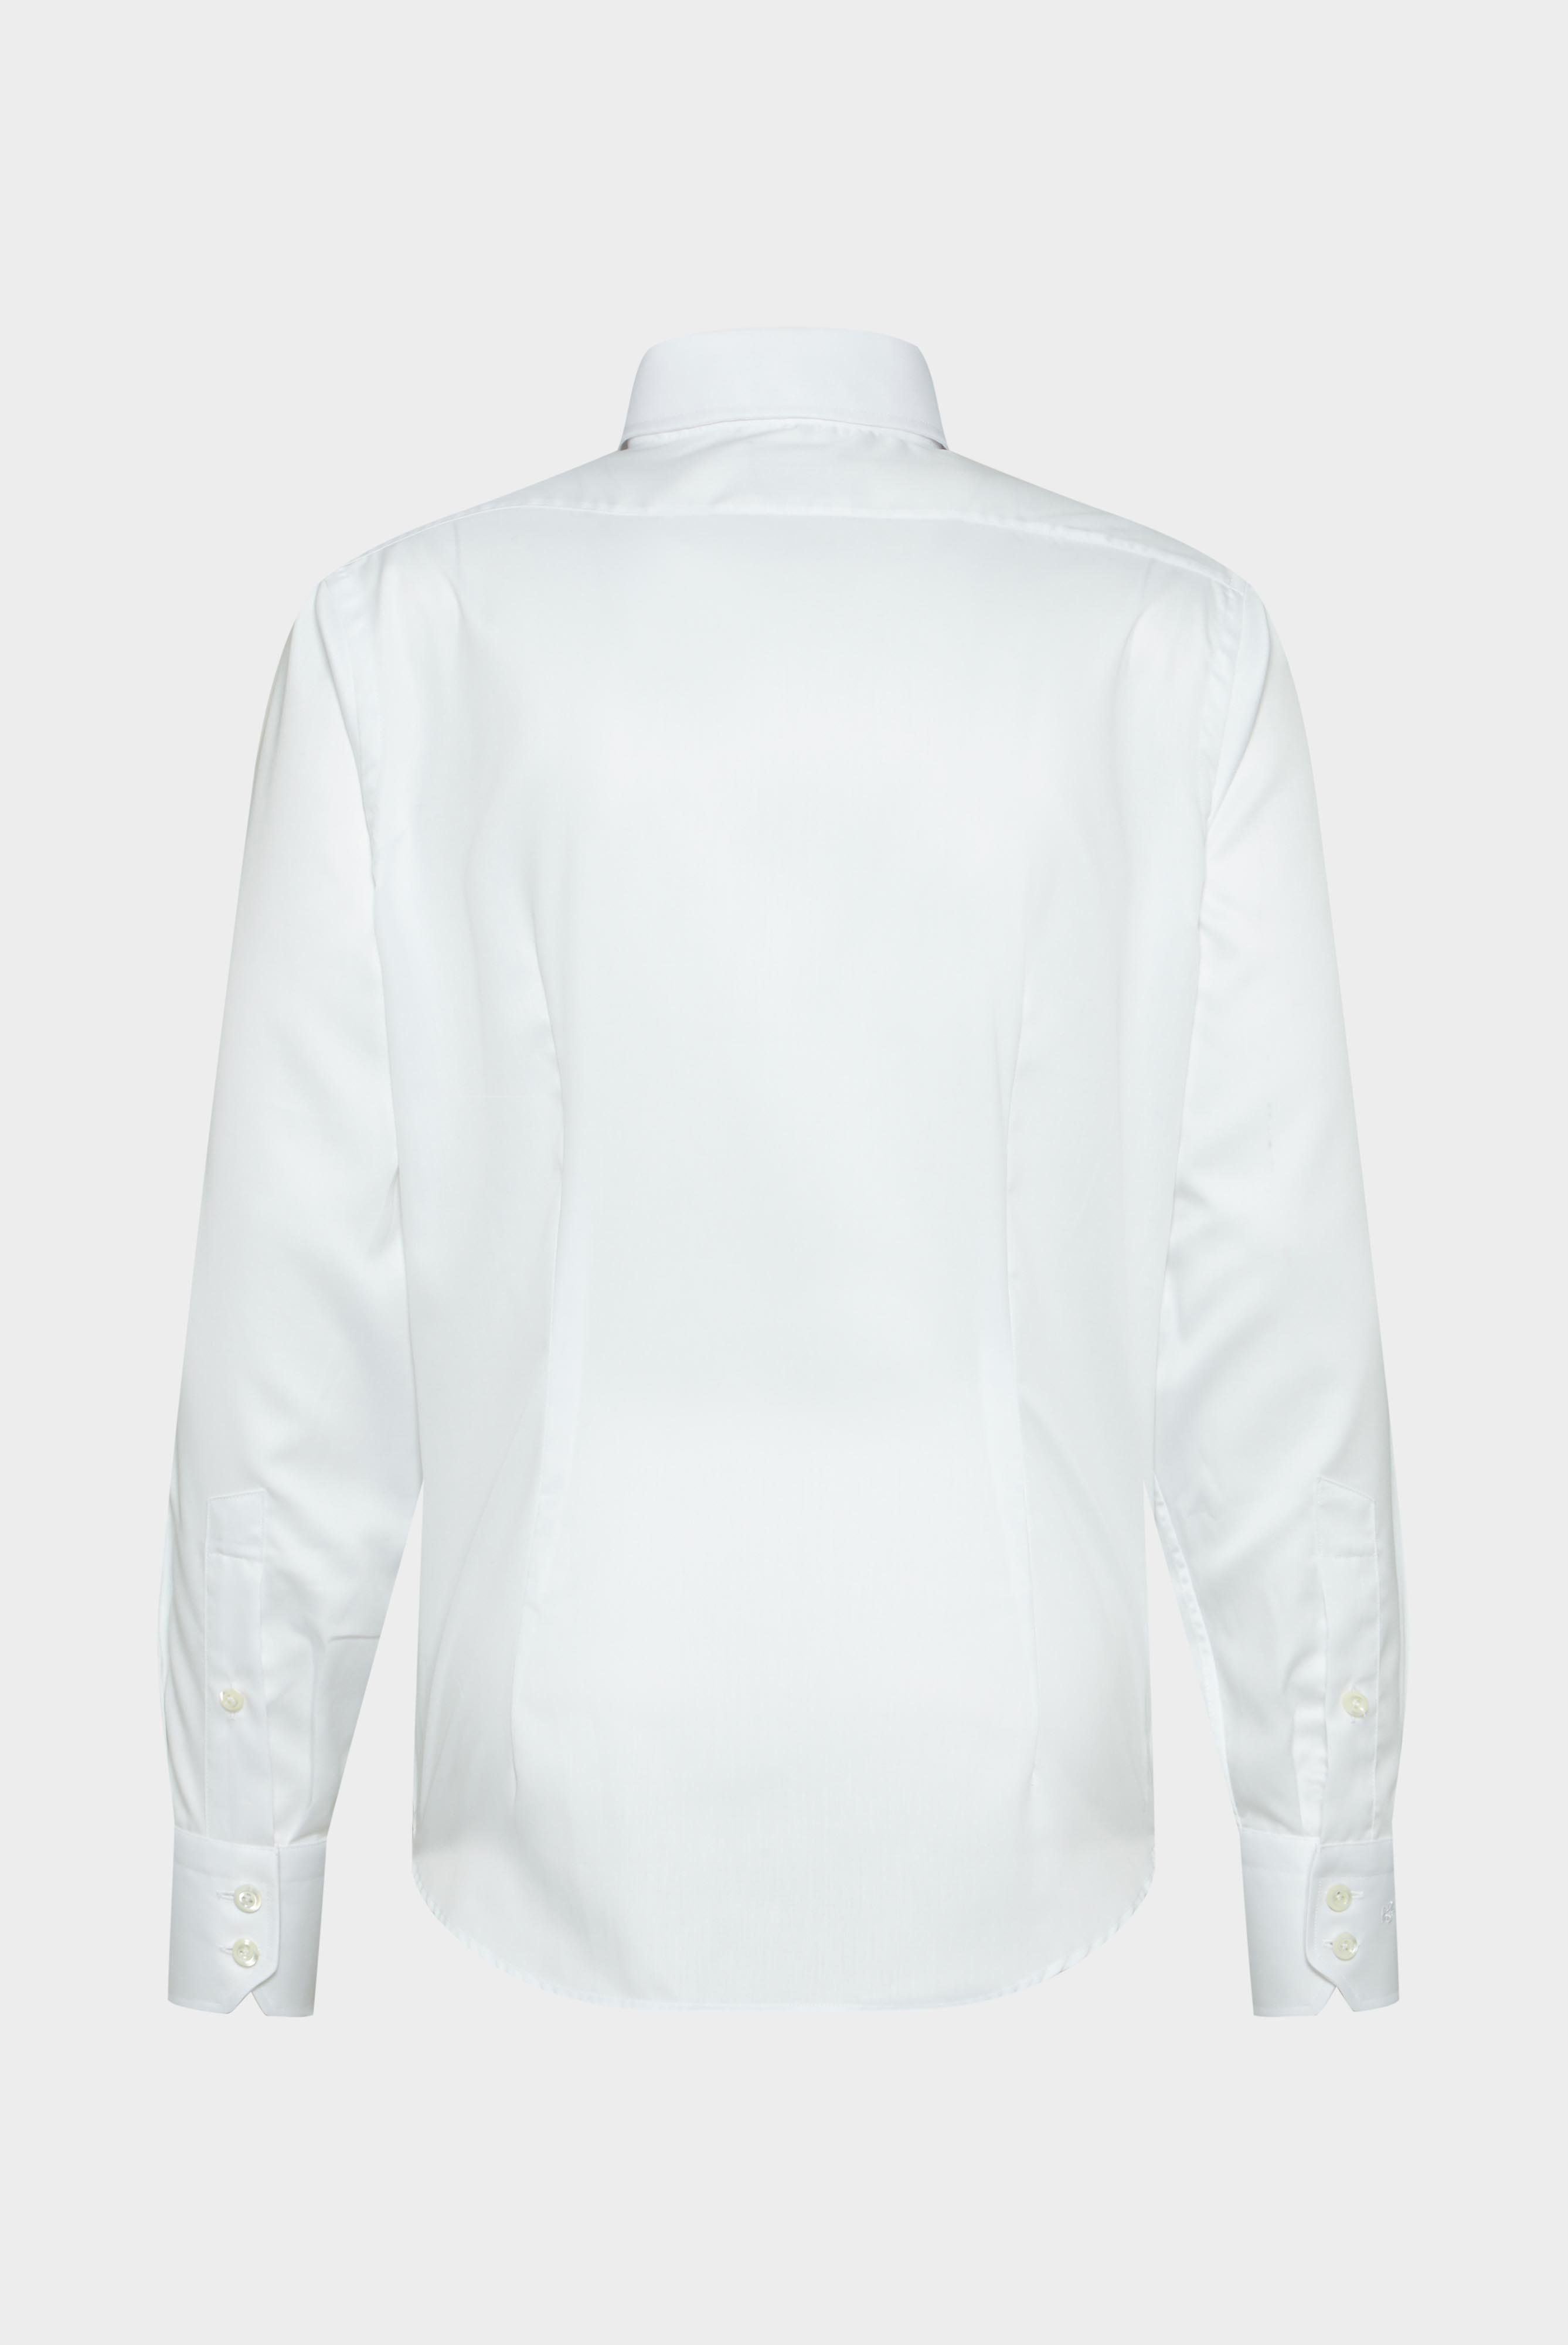 Bügelleichte Hemden+Bügelfreies Twill Hemd Tailor Fit+20.2020.BQ.132241.000.41